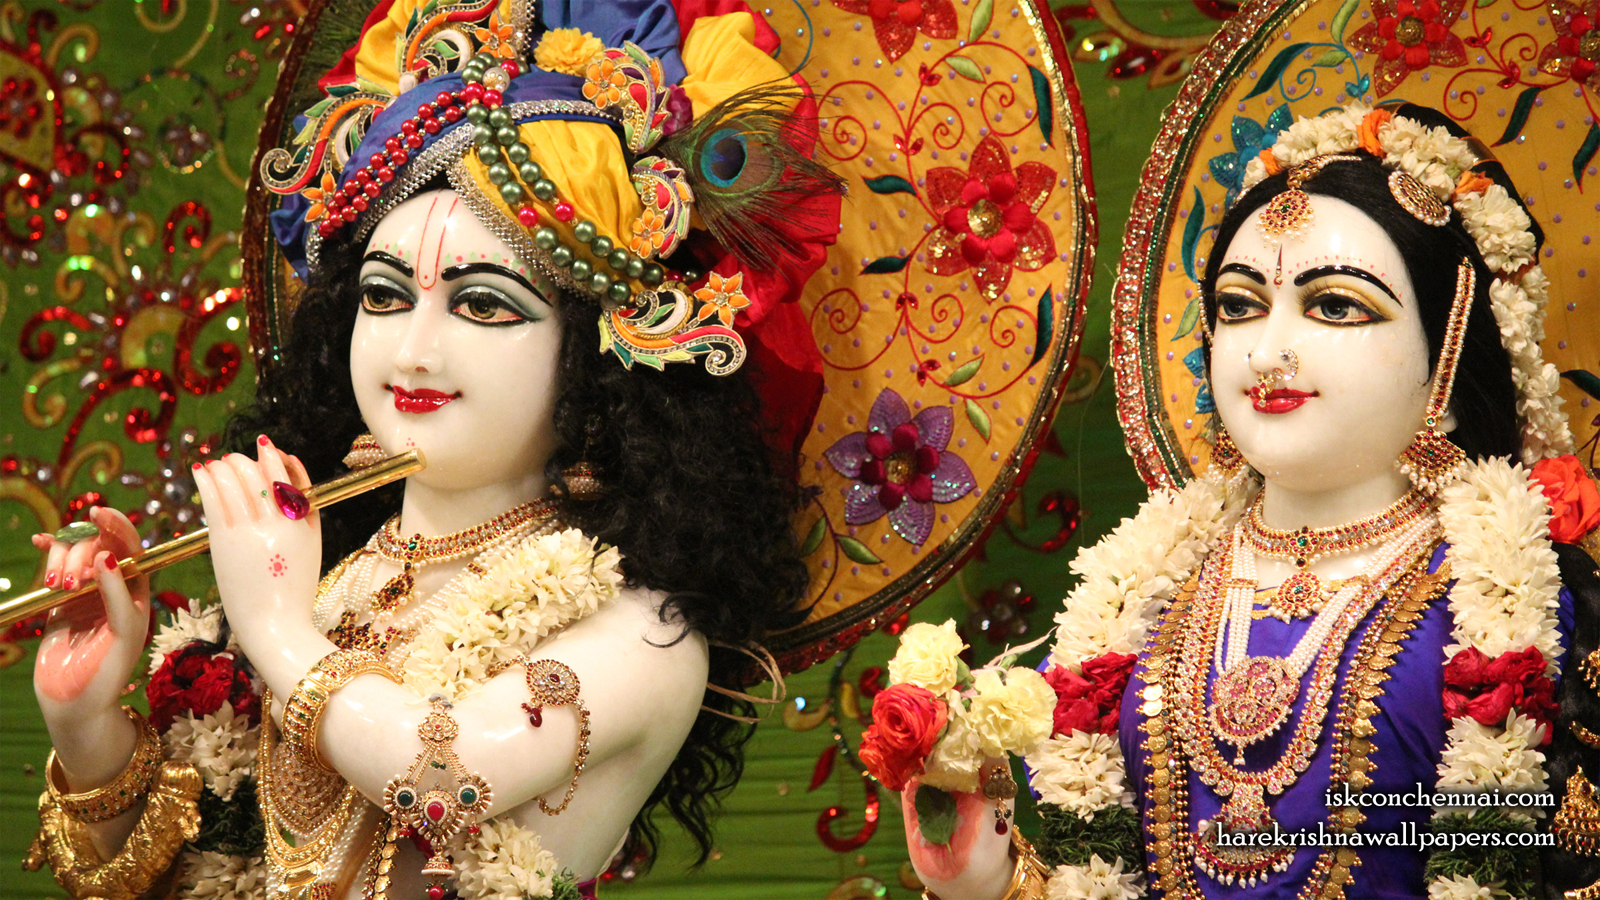 Sri Sri Radha Krishna Close up Wallpaper (011) Size 1600x900 Download